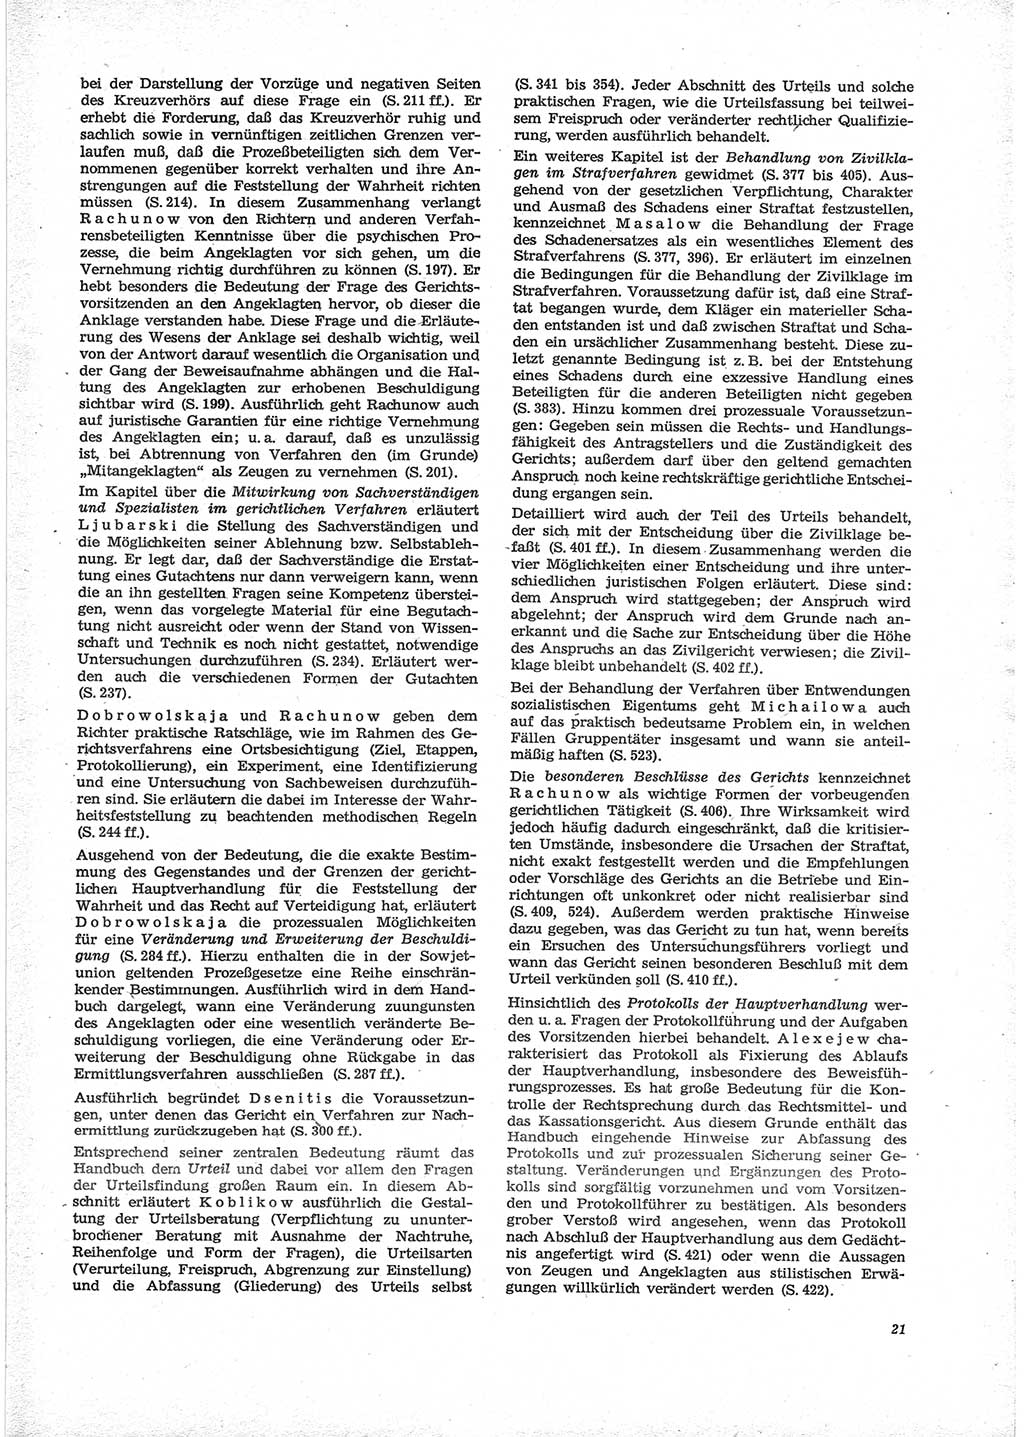 Neue Justiz (NJ), Zeitschrift für Recht und Rechtswissenschaft [Deutsche Demokratische Republik (DDR)], 28. Jahrgang 1974, Seite 21 (NJ DDR 1974, S. 21)